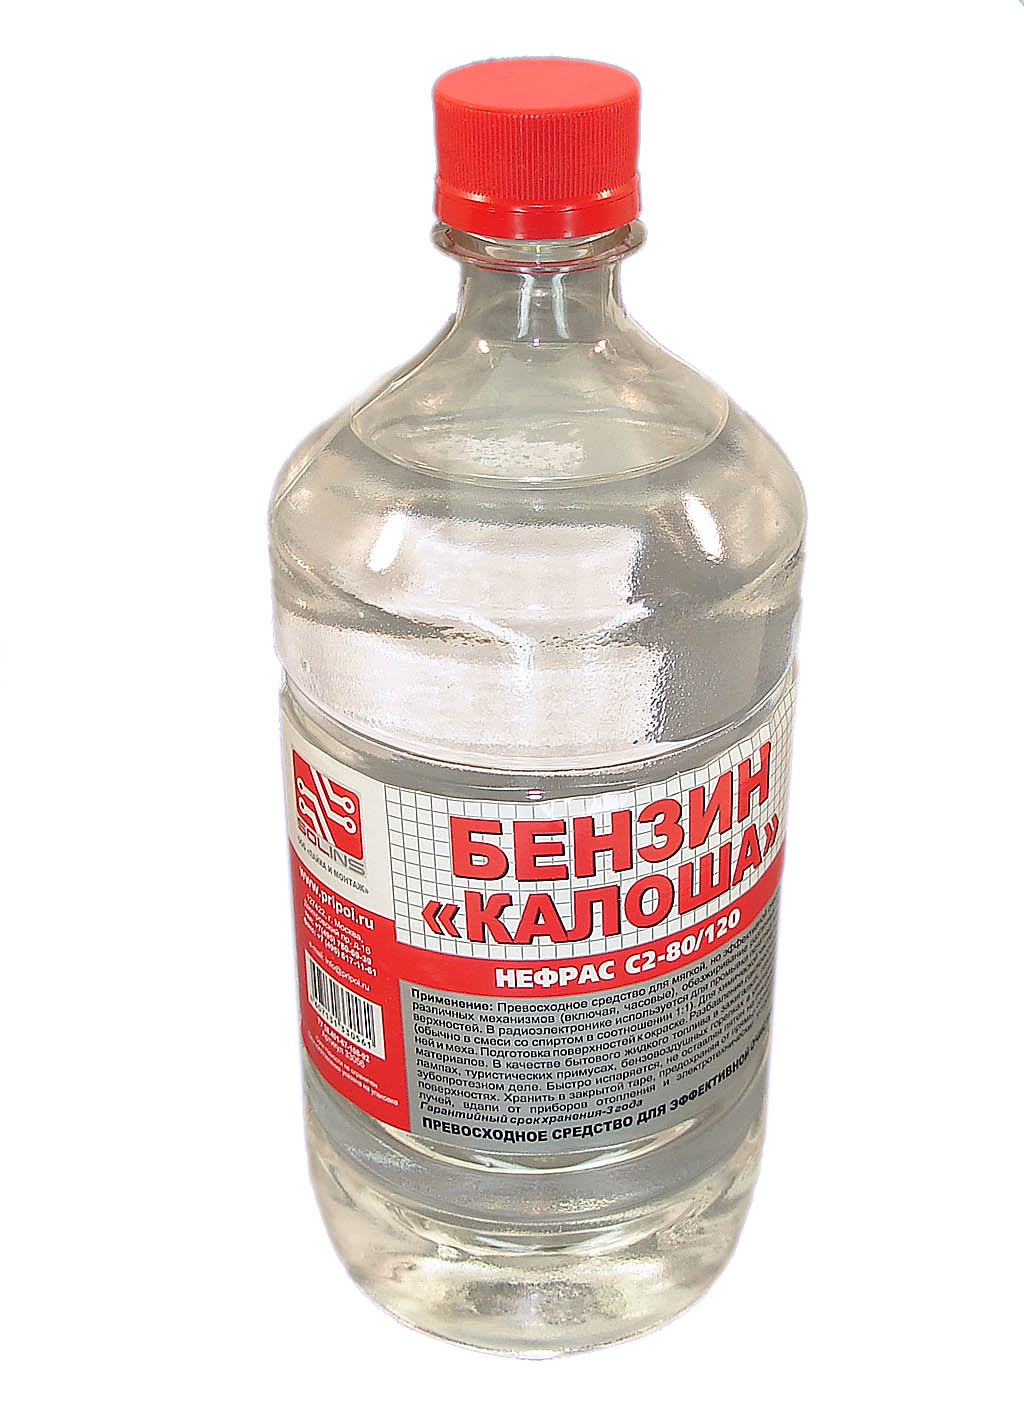 Купить растворитель "Калоша" РБ, бутылка 1 л